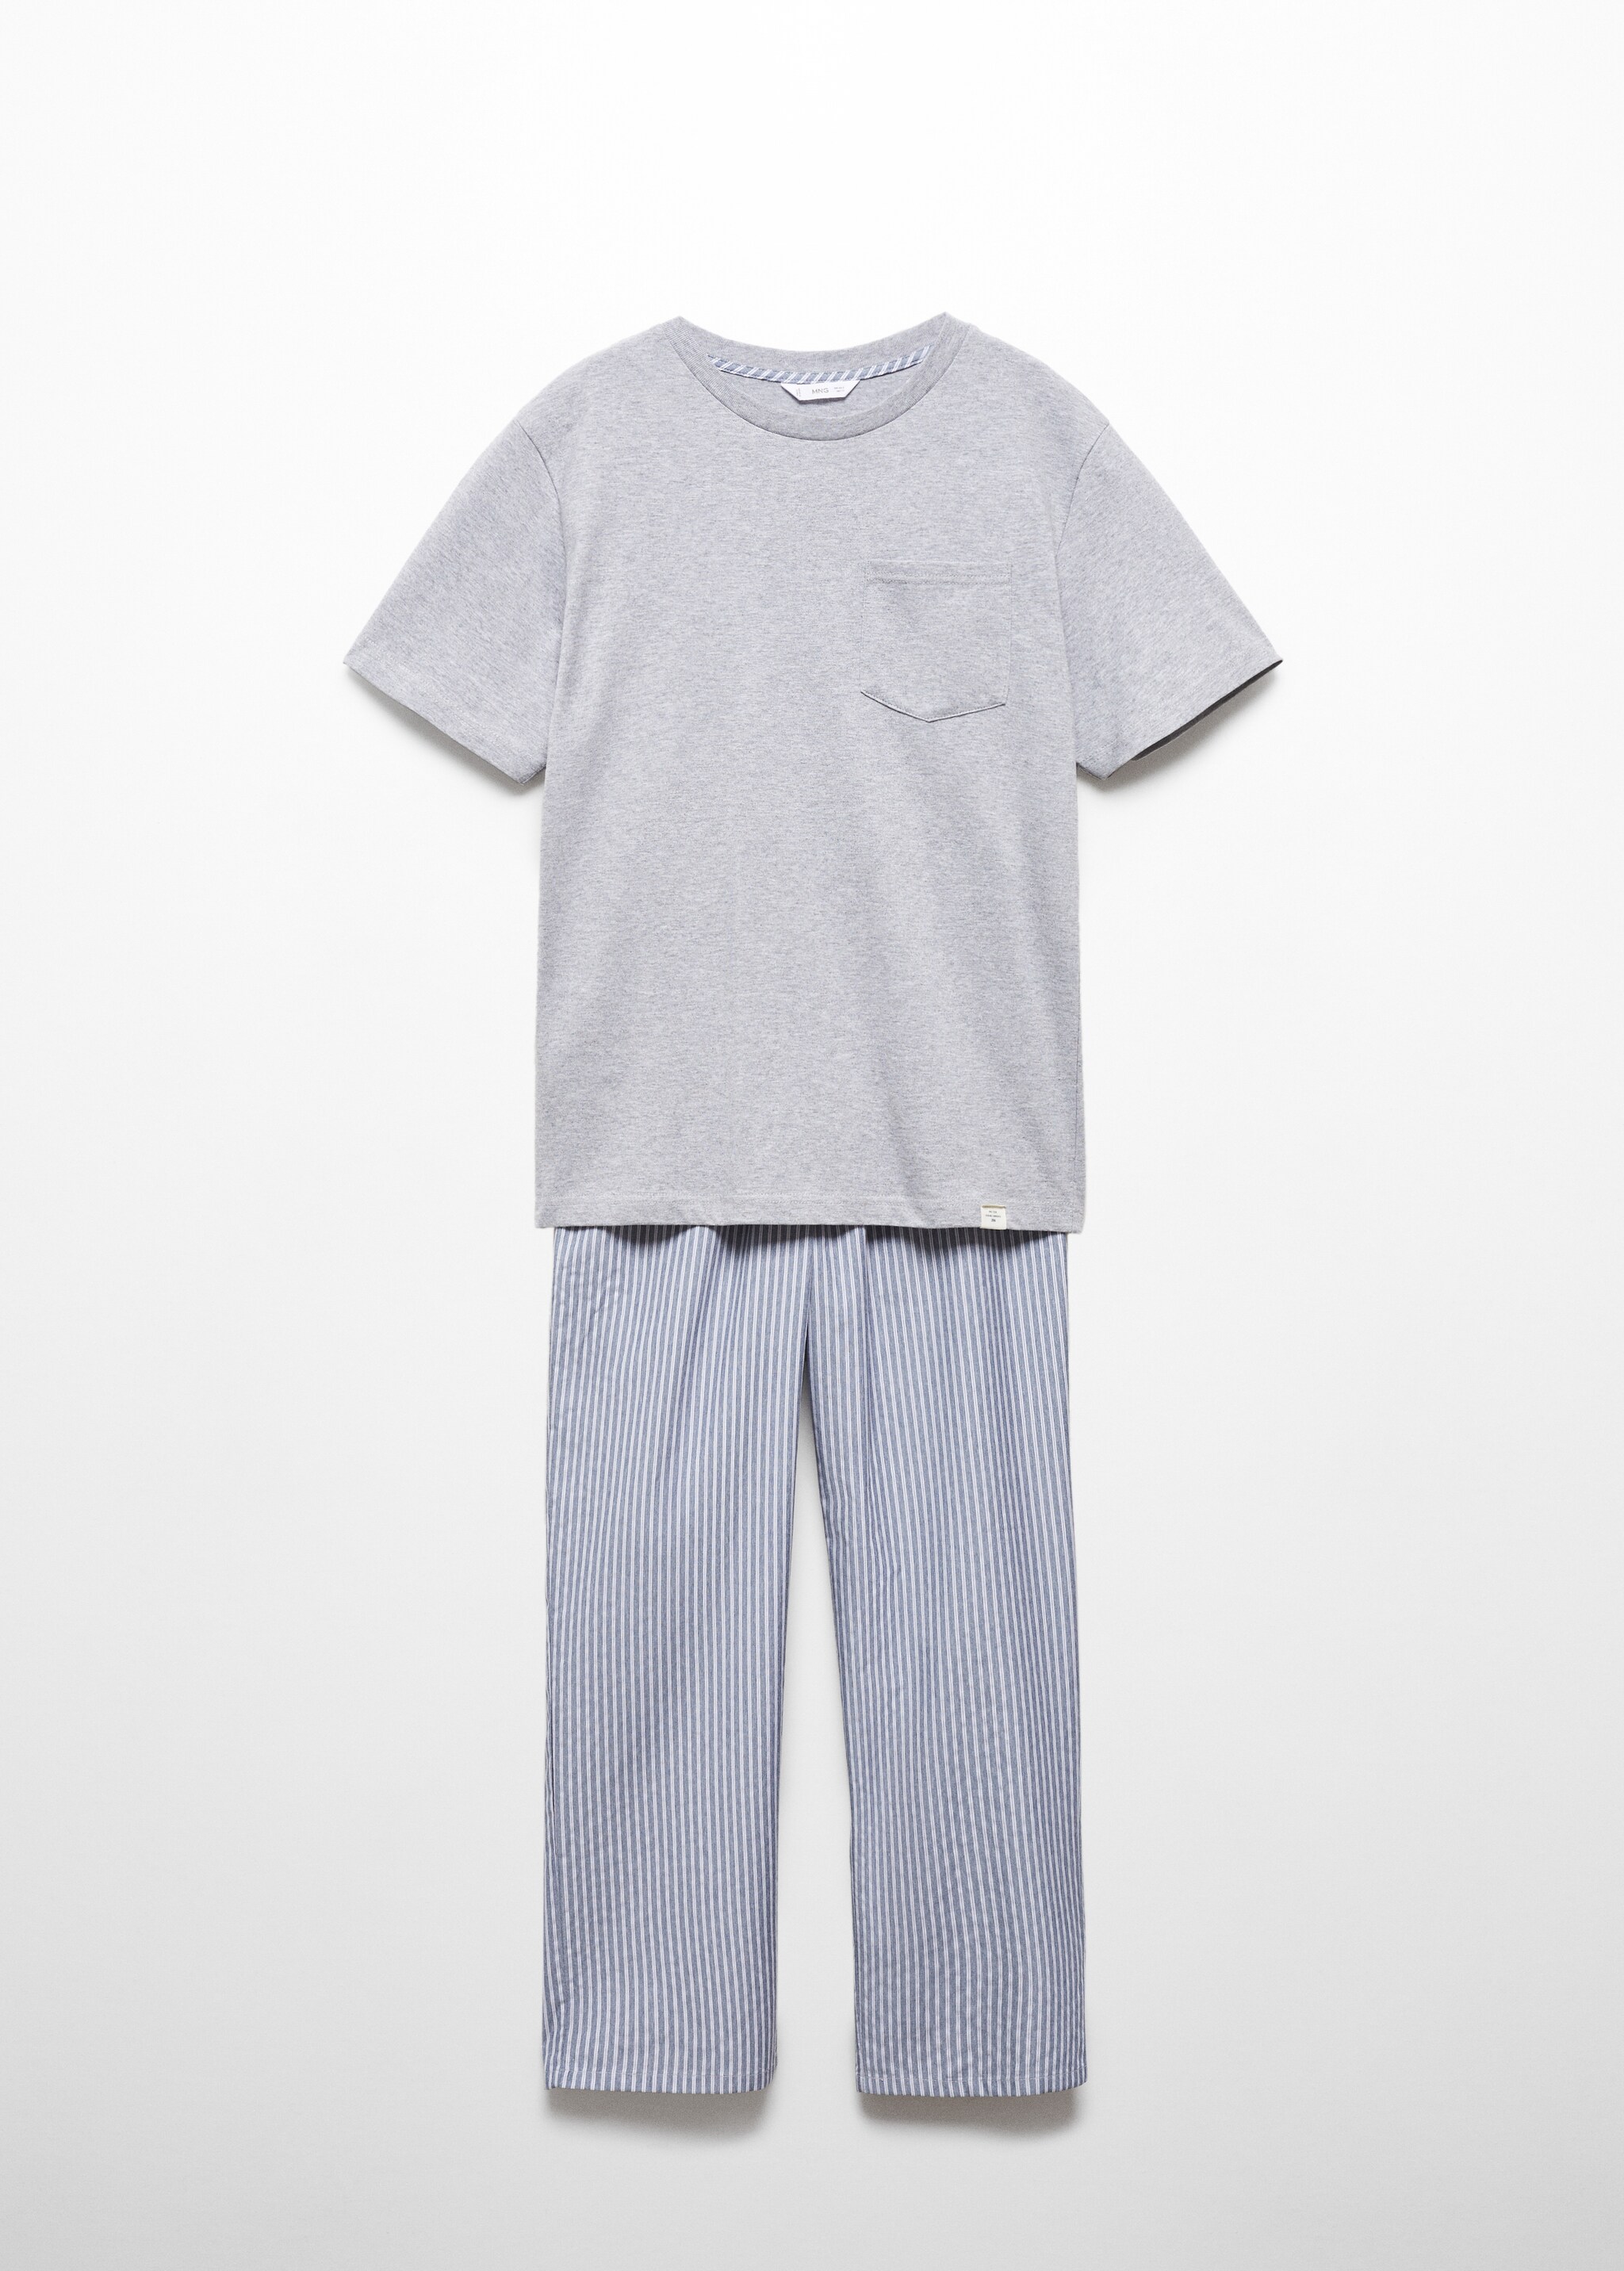 Pijama largo rayas - Artículo sin modelo